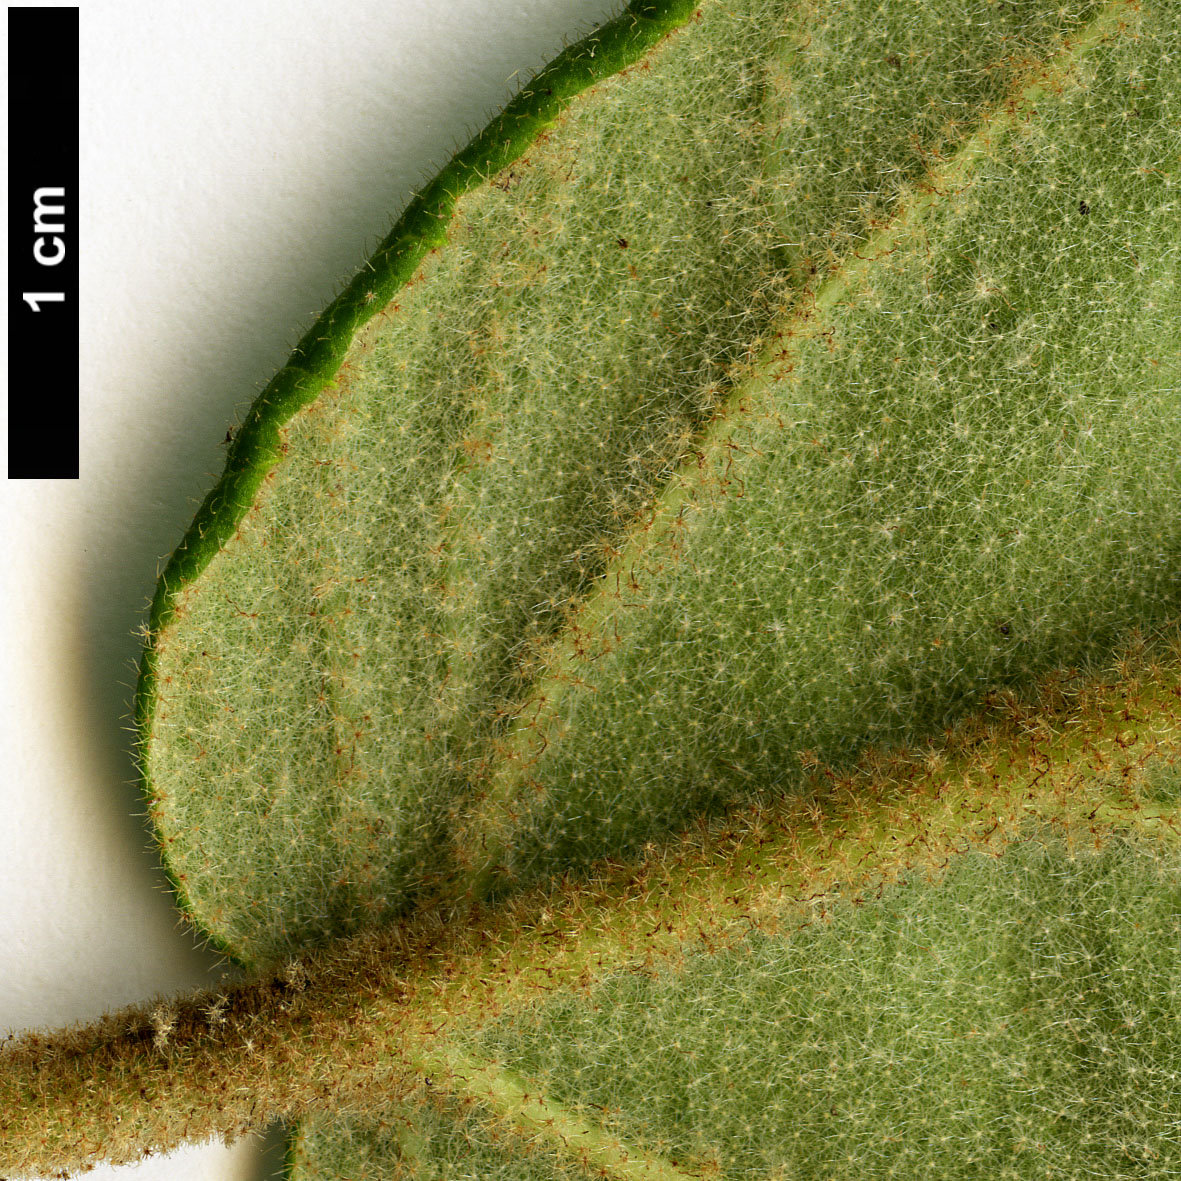 High resolution image: Family: Adoxaceae - Genus: Viburnum - Taxon: buddleifolium